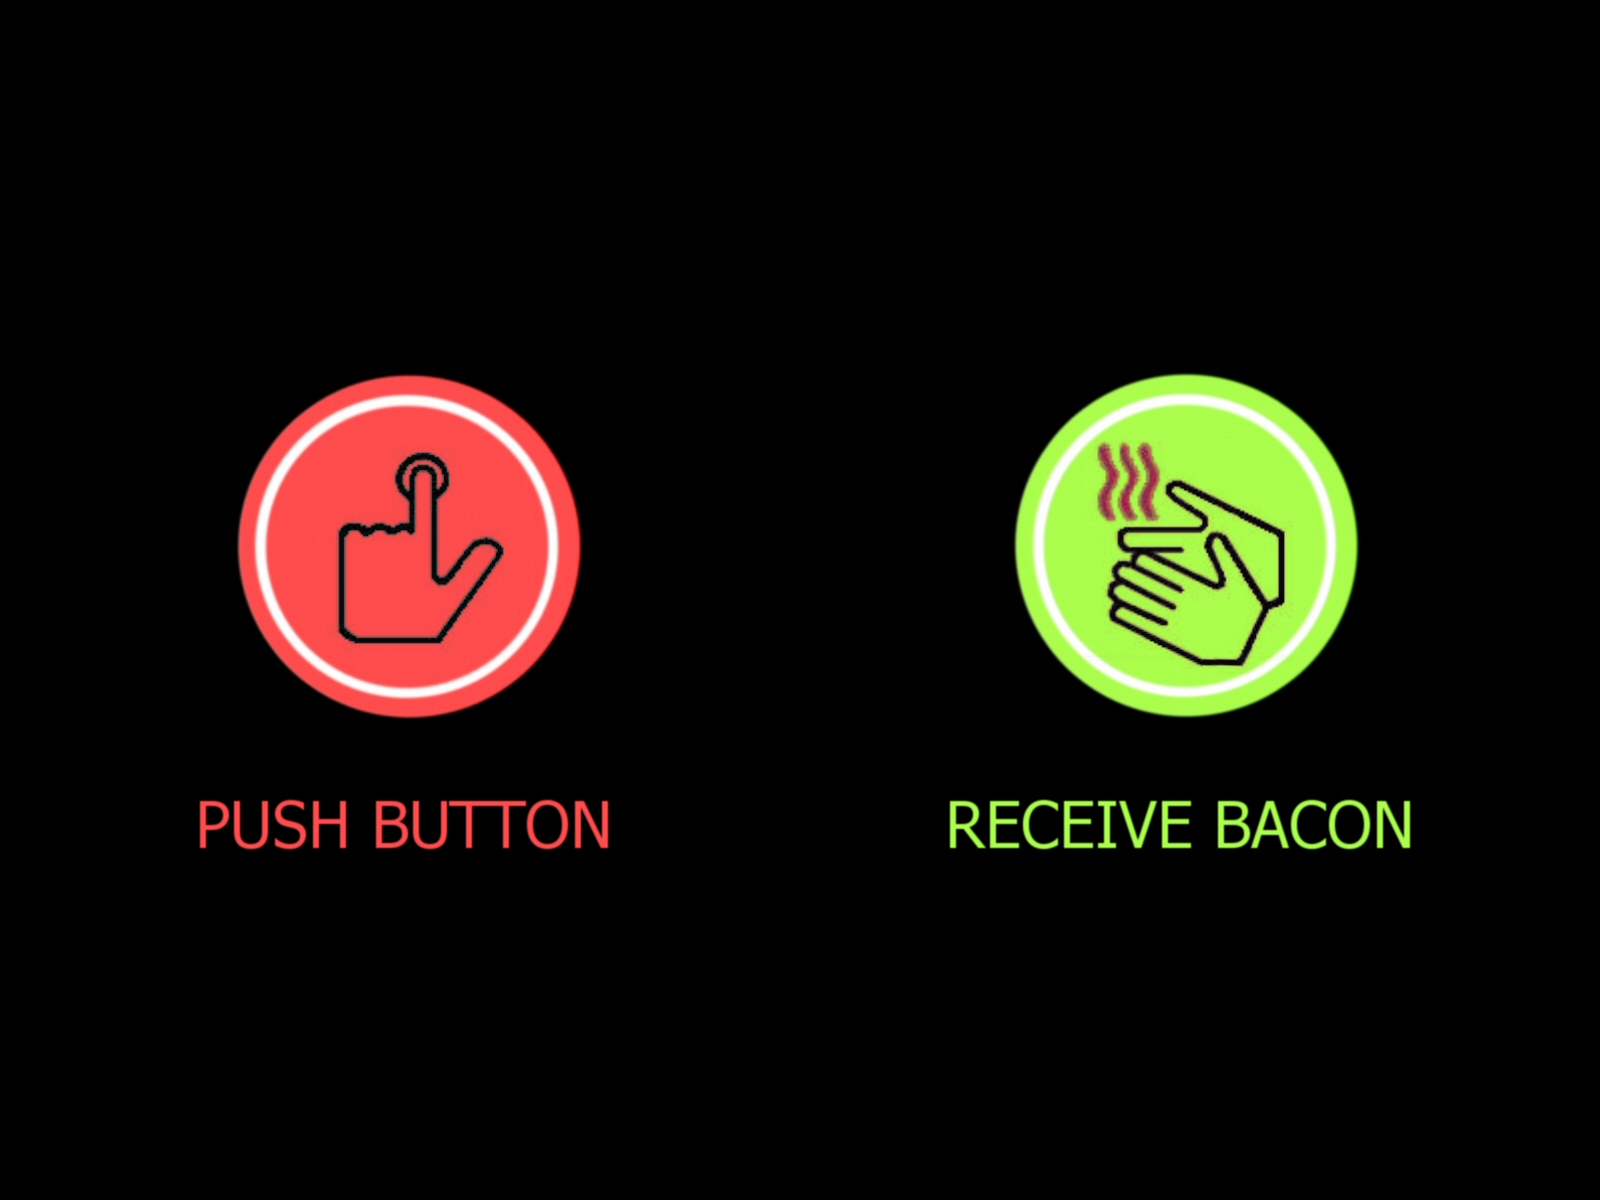 Push button, receive bacon